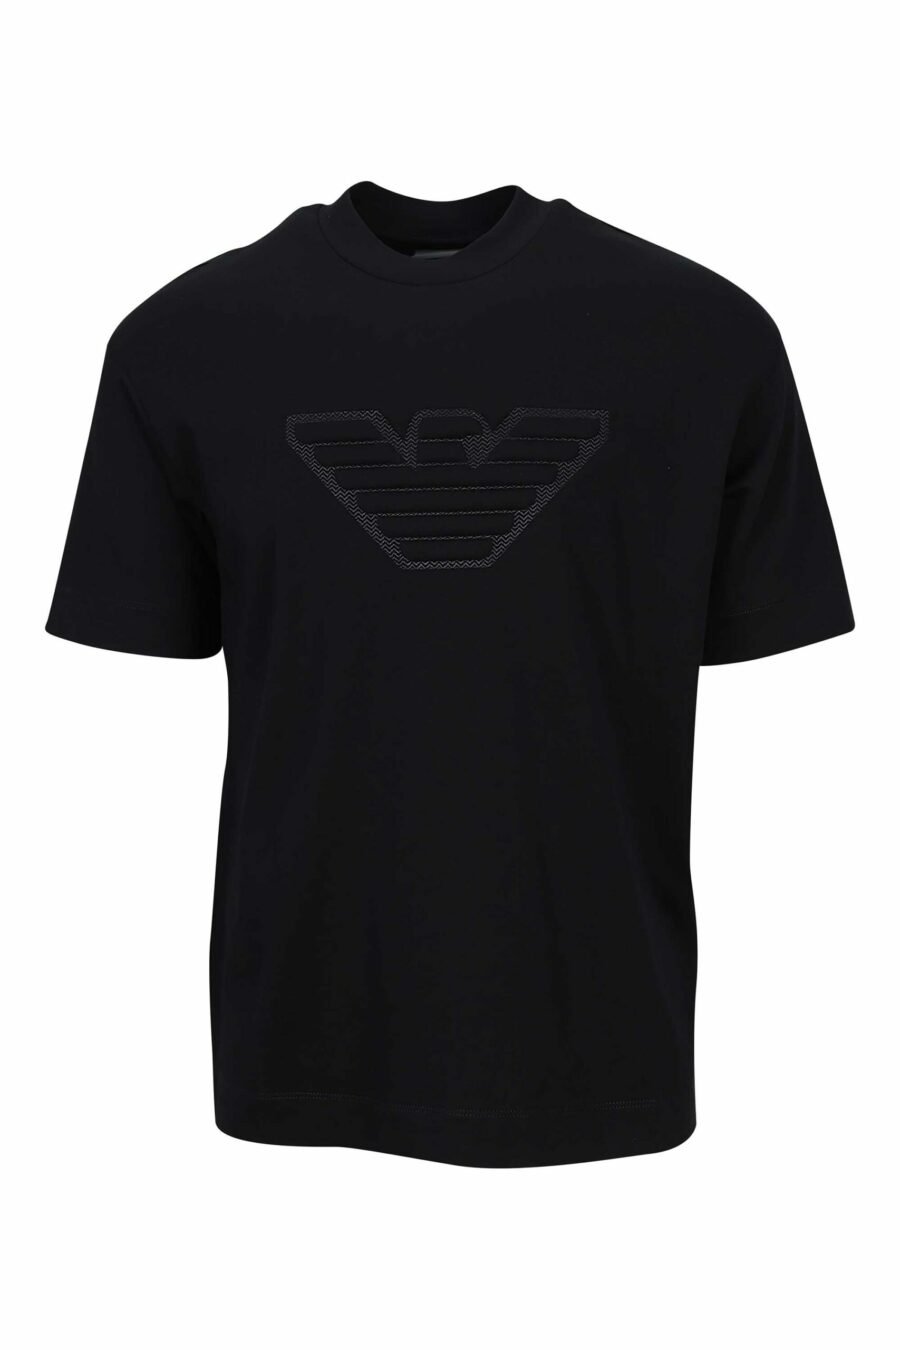 Black T-shirt with monochromatic eagle maxilogo - 8057970432920 scaled